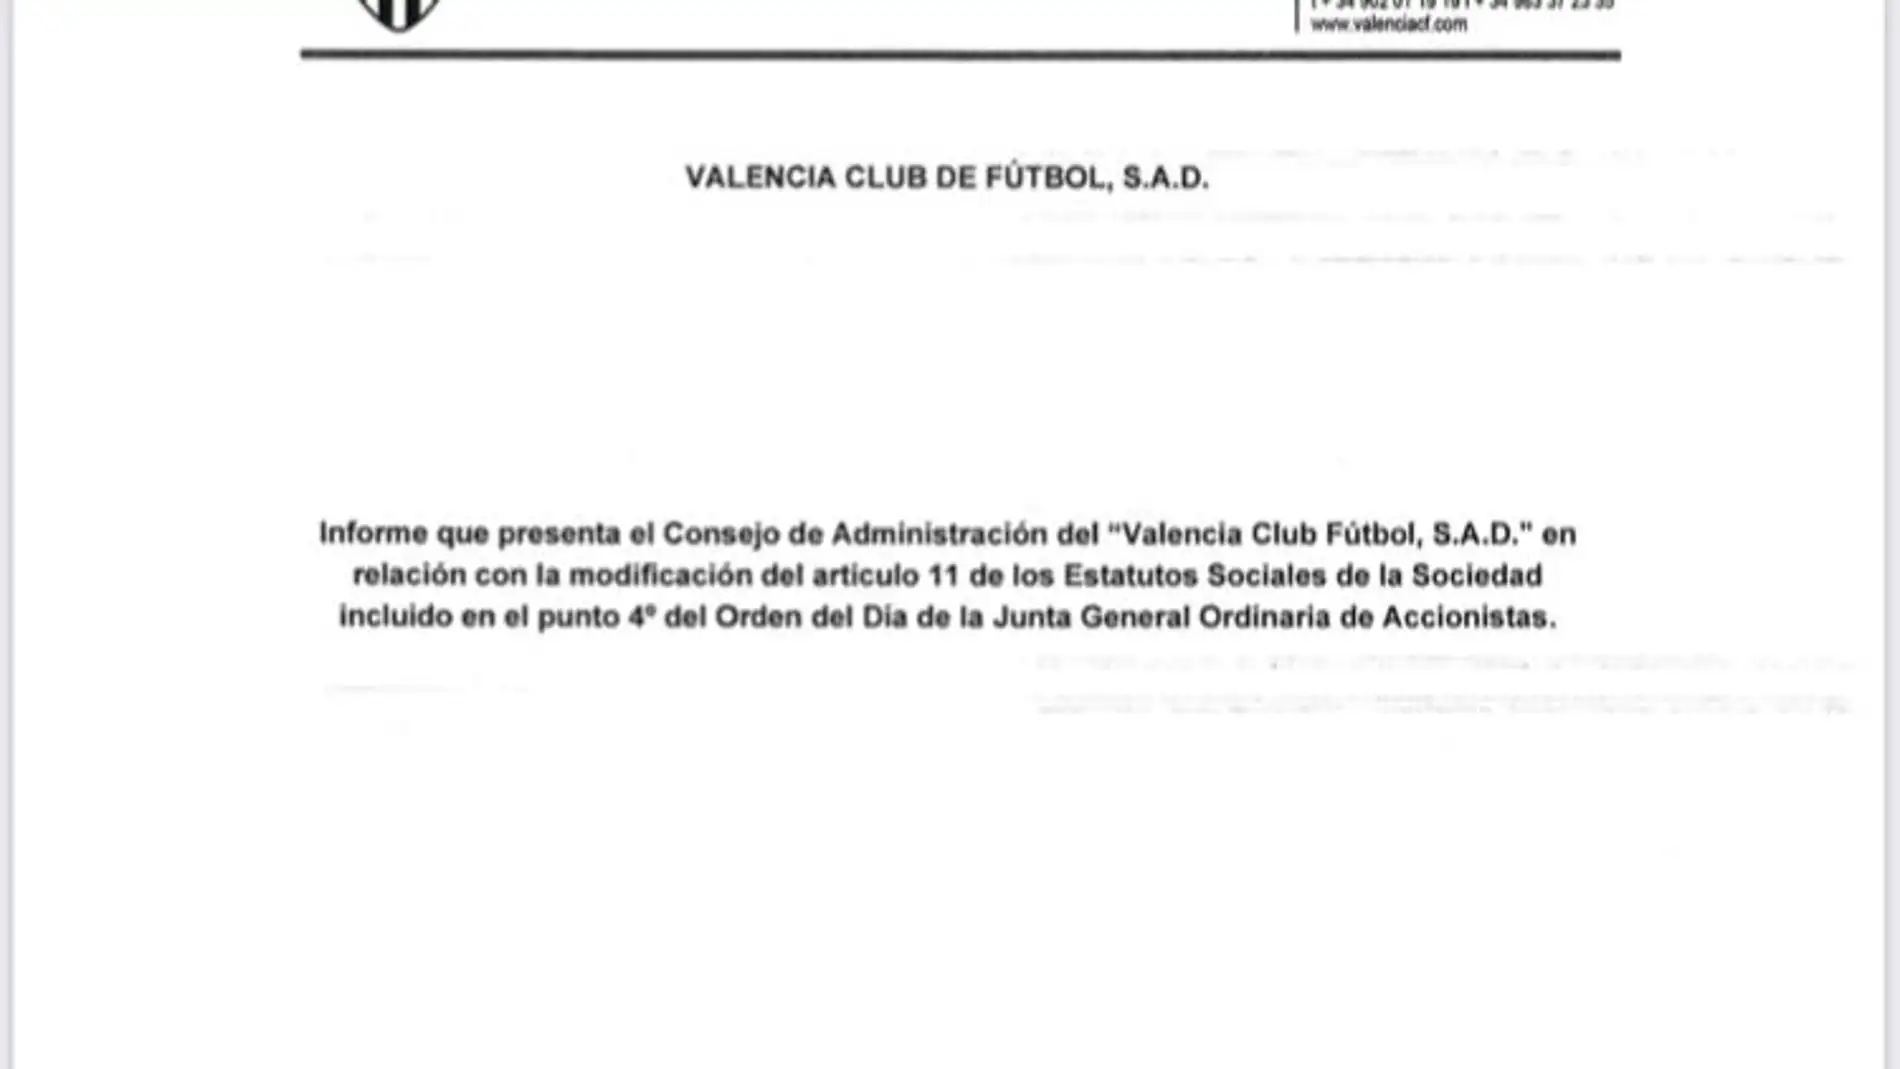 Peter Lim concedió al Valencia un préstamo de 16,5 millones de euros